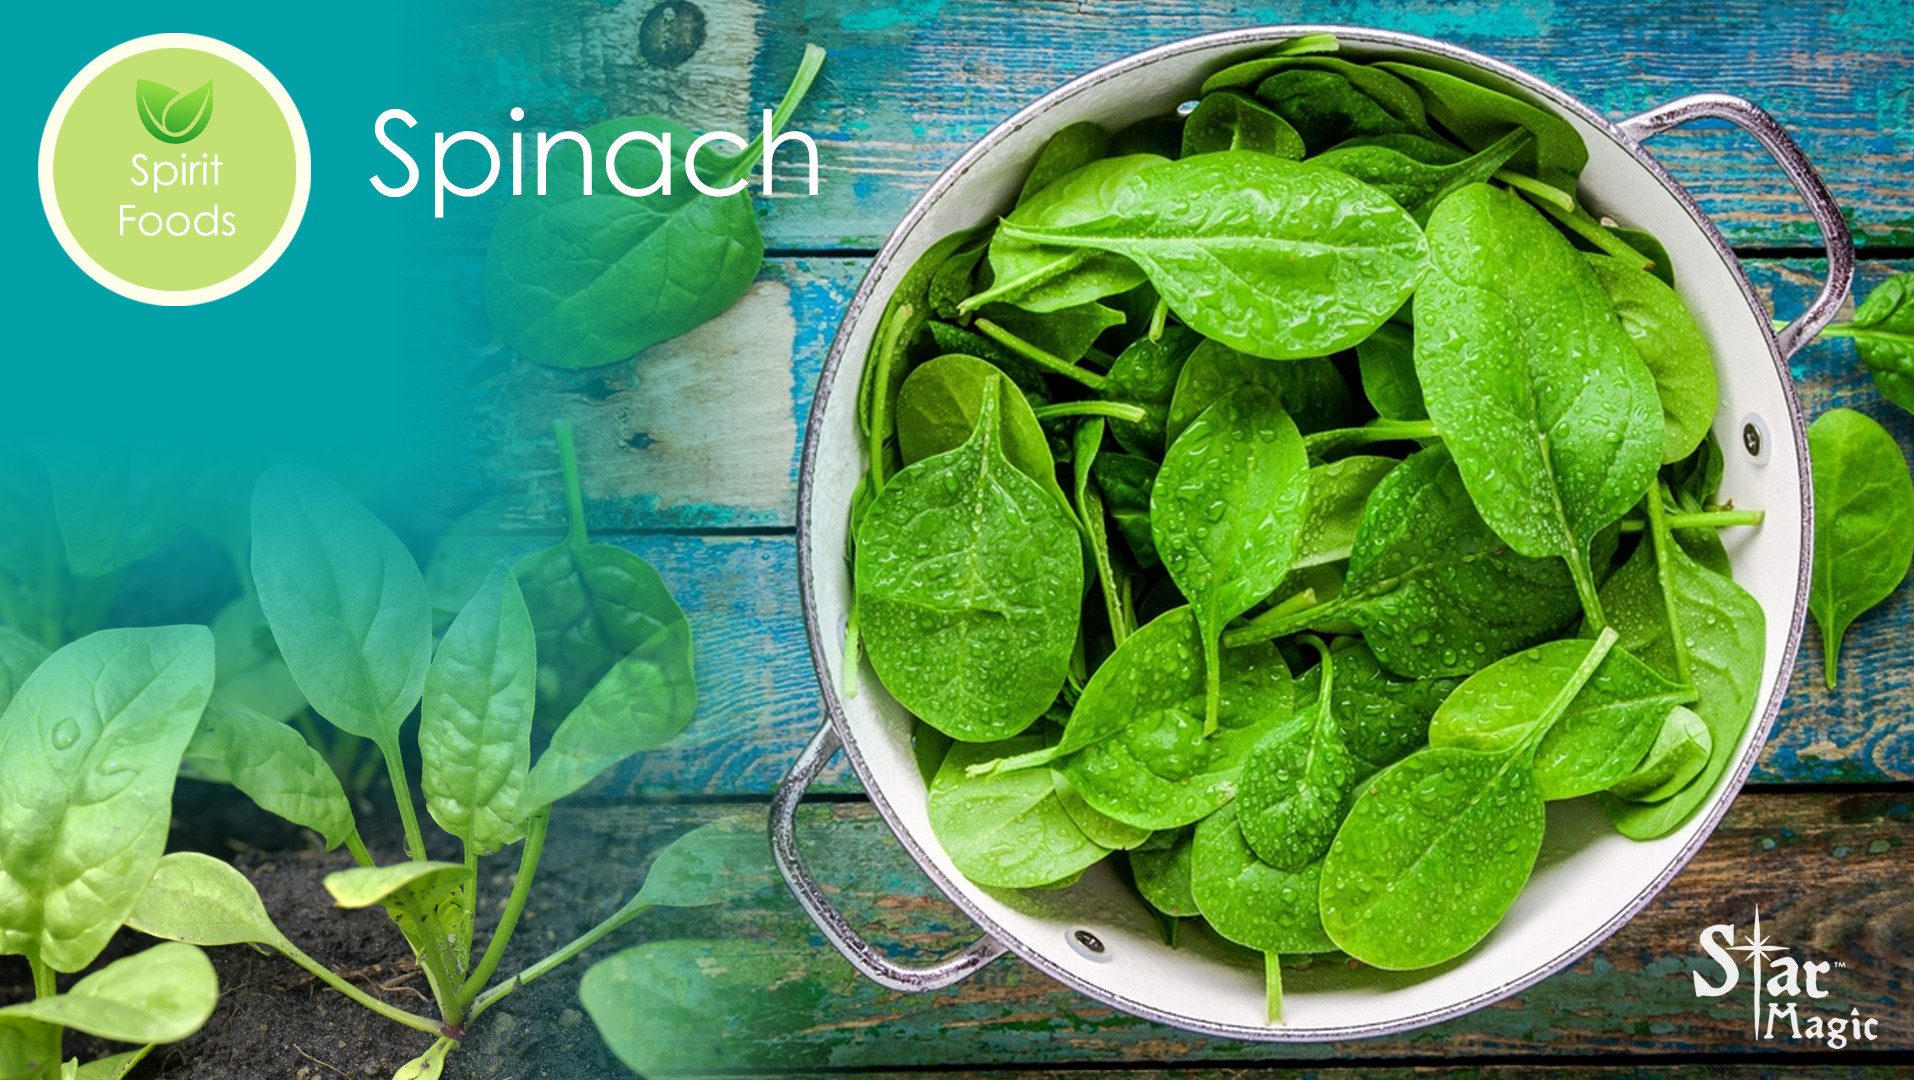 Spirit Food – Spinach